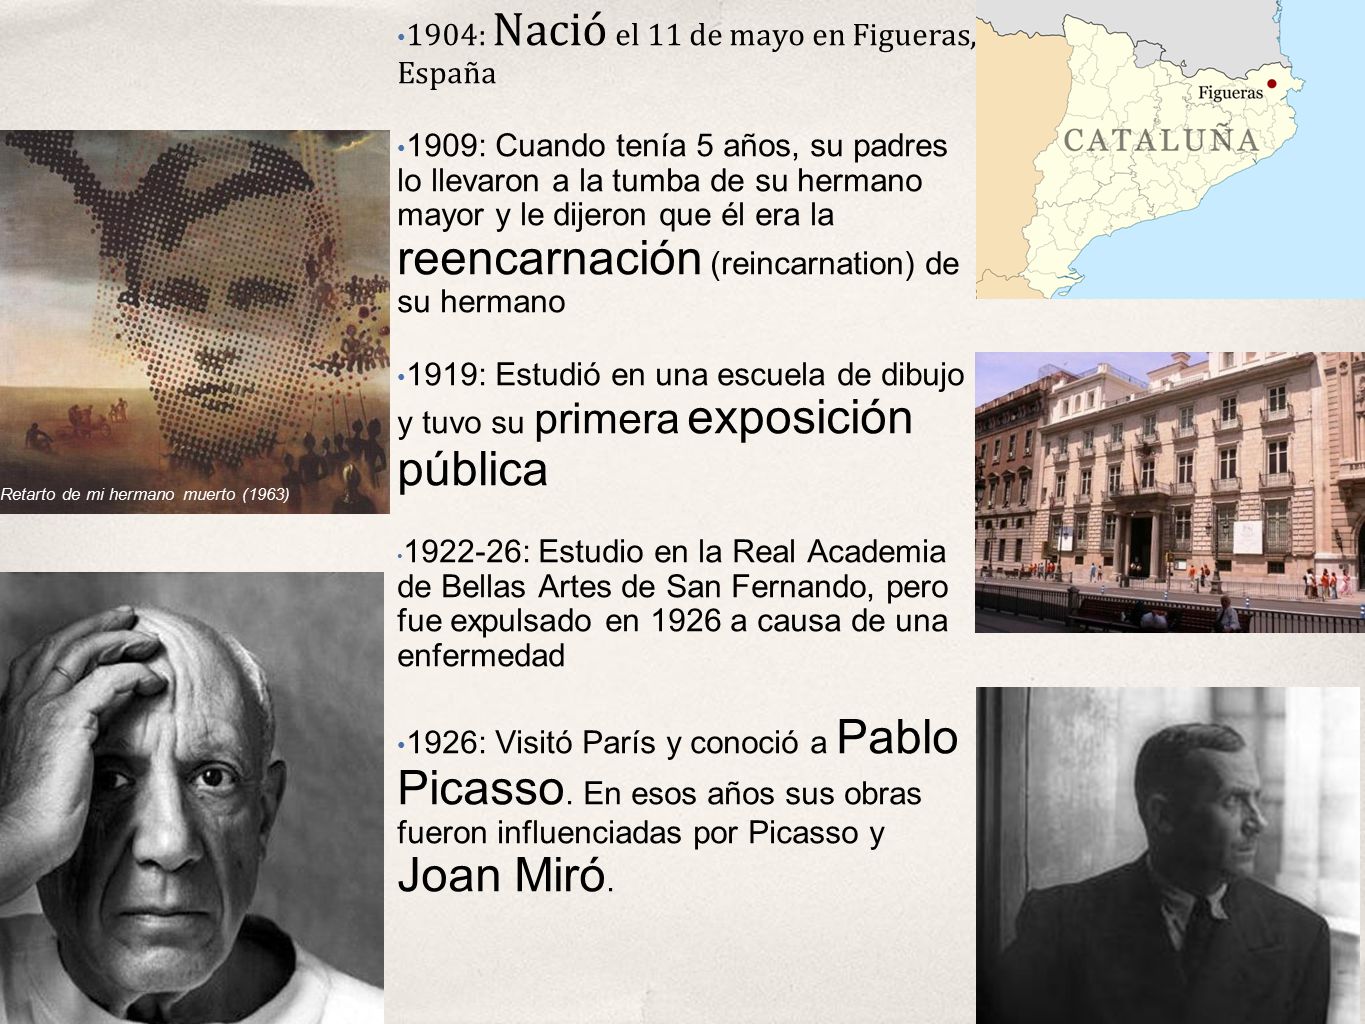 1904: Nació el 11 de mayo en Figueras, España